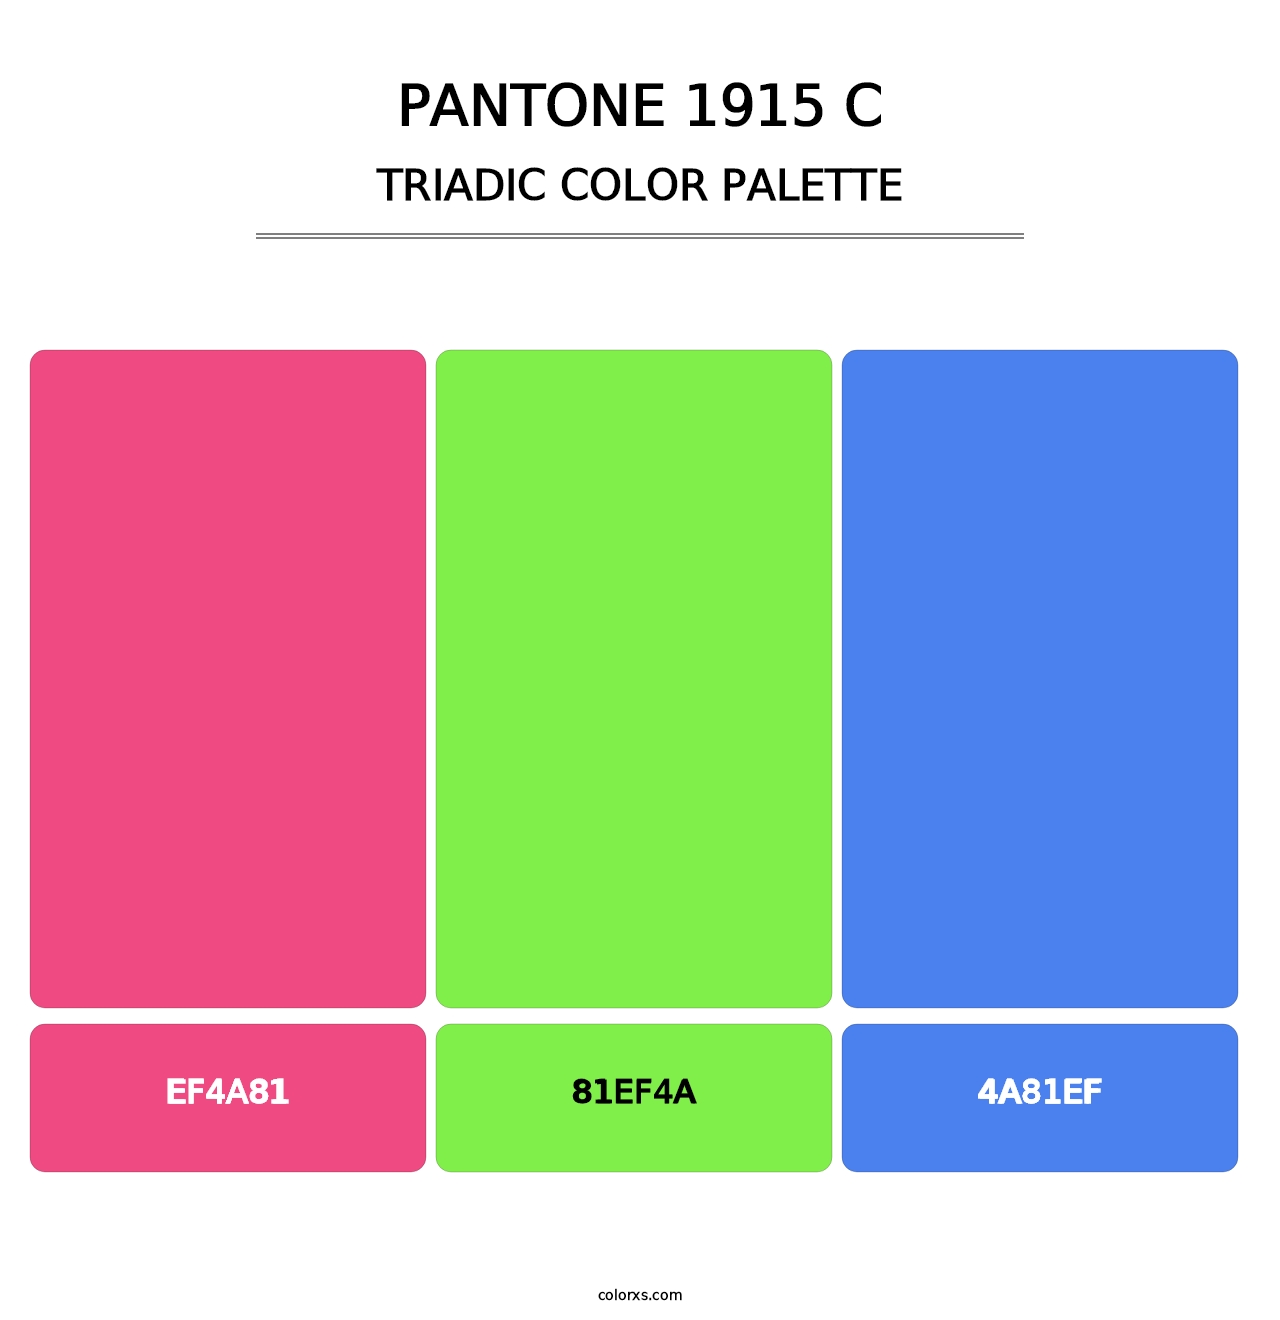 PANTONE 1915 C - Triadic Color Palette